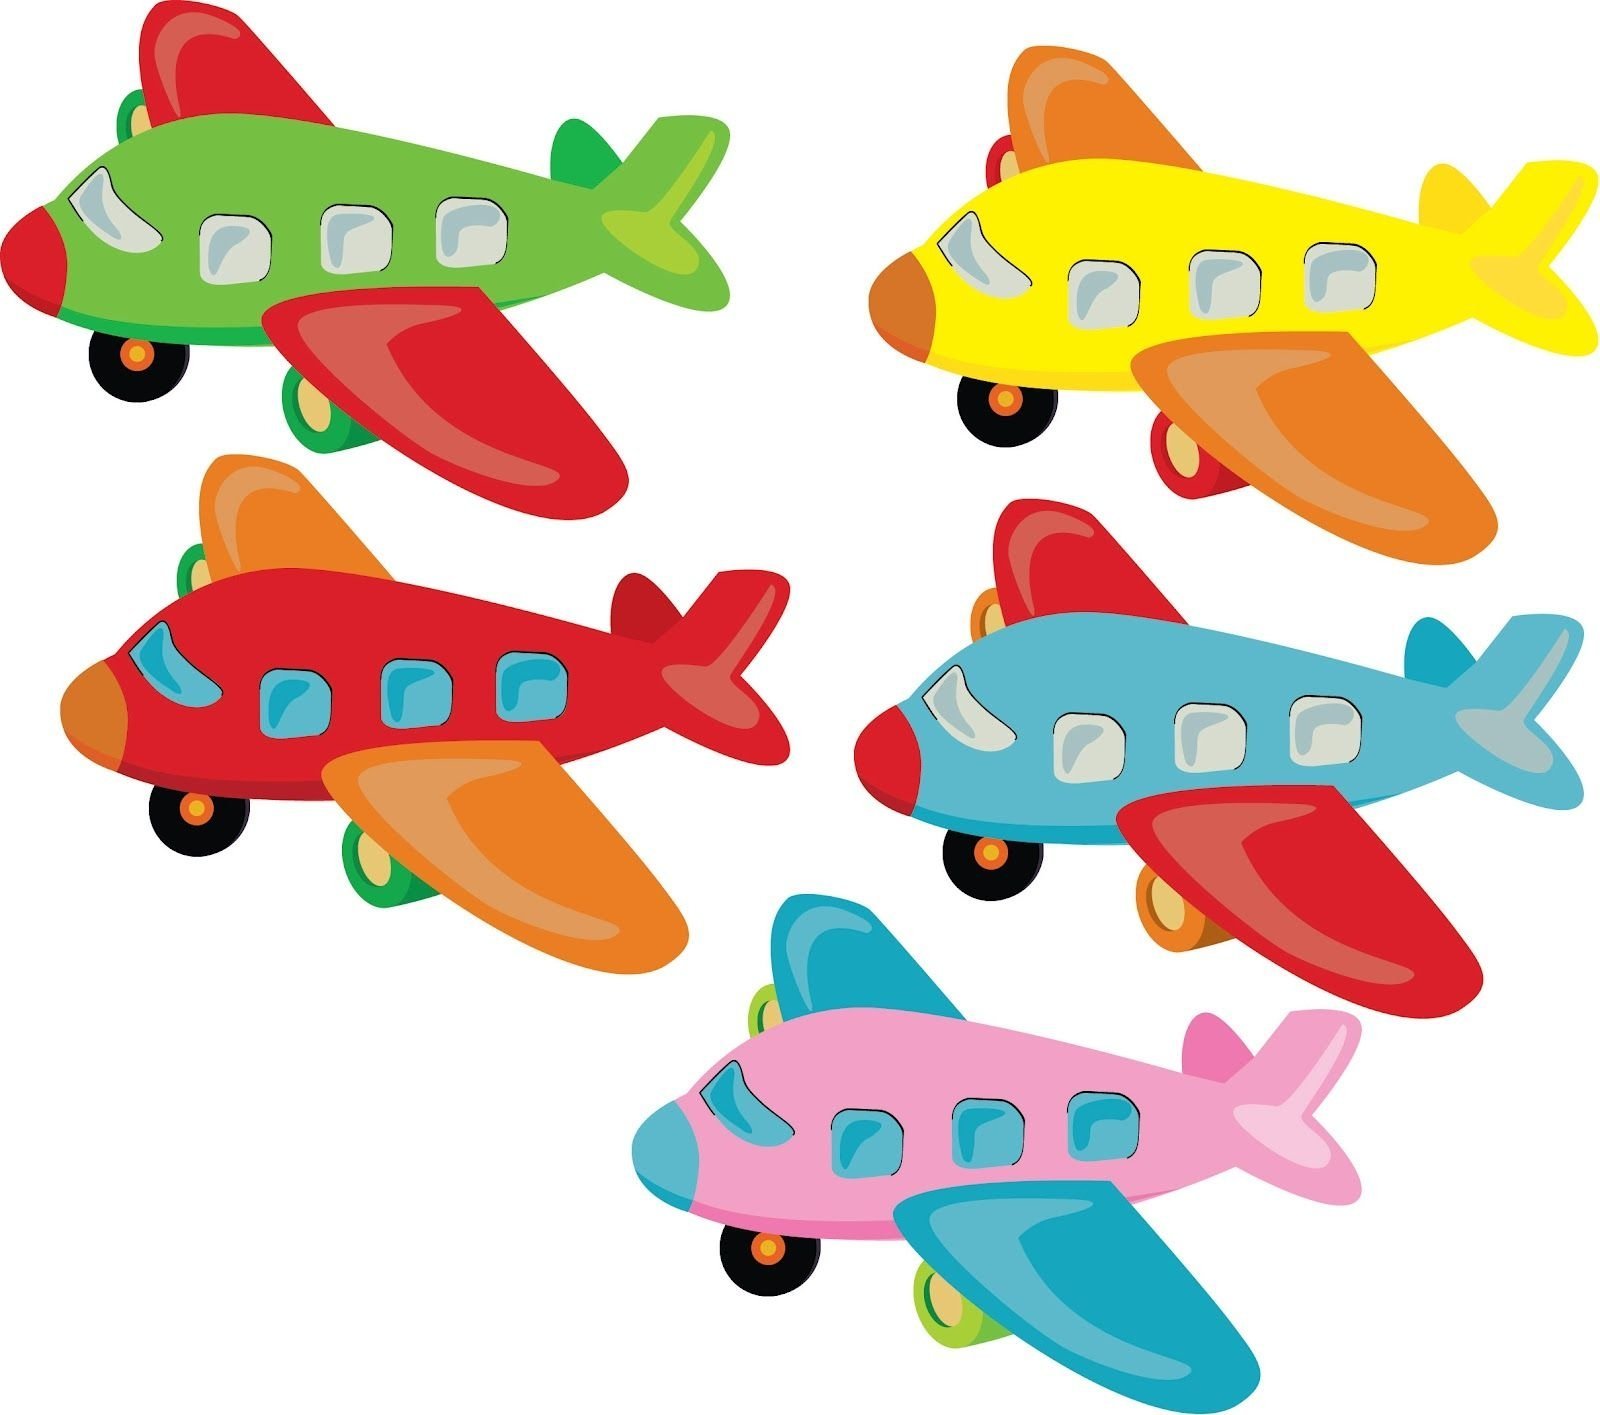 Matching plane. Самолеты. Аппликация. Аппликация самолетик. Самолет для детей на прозрачном фоне. Самолет из цветной бумаги.